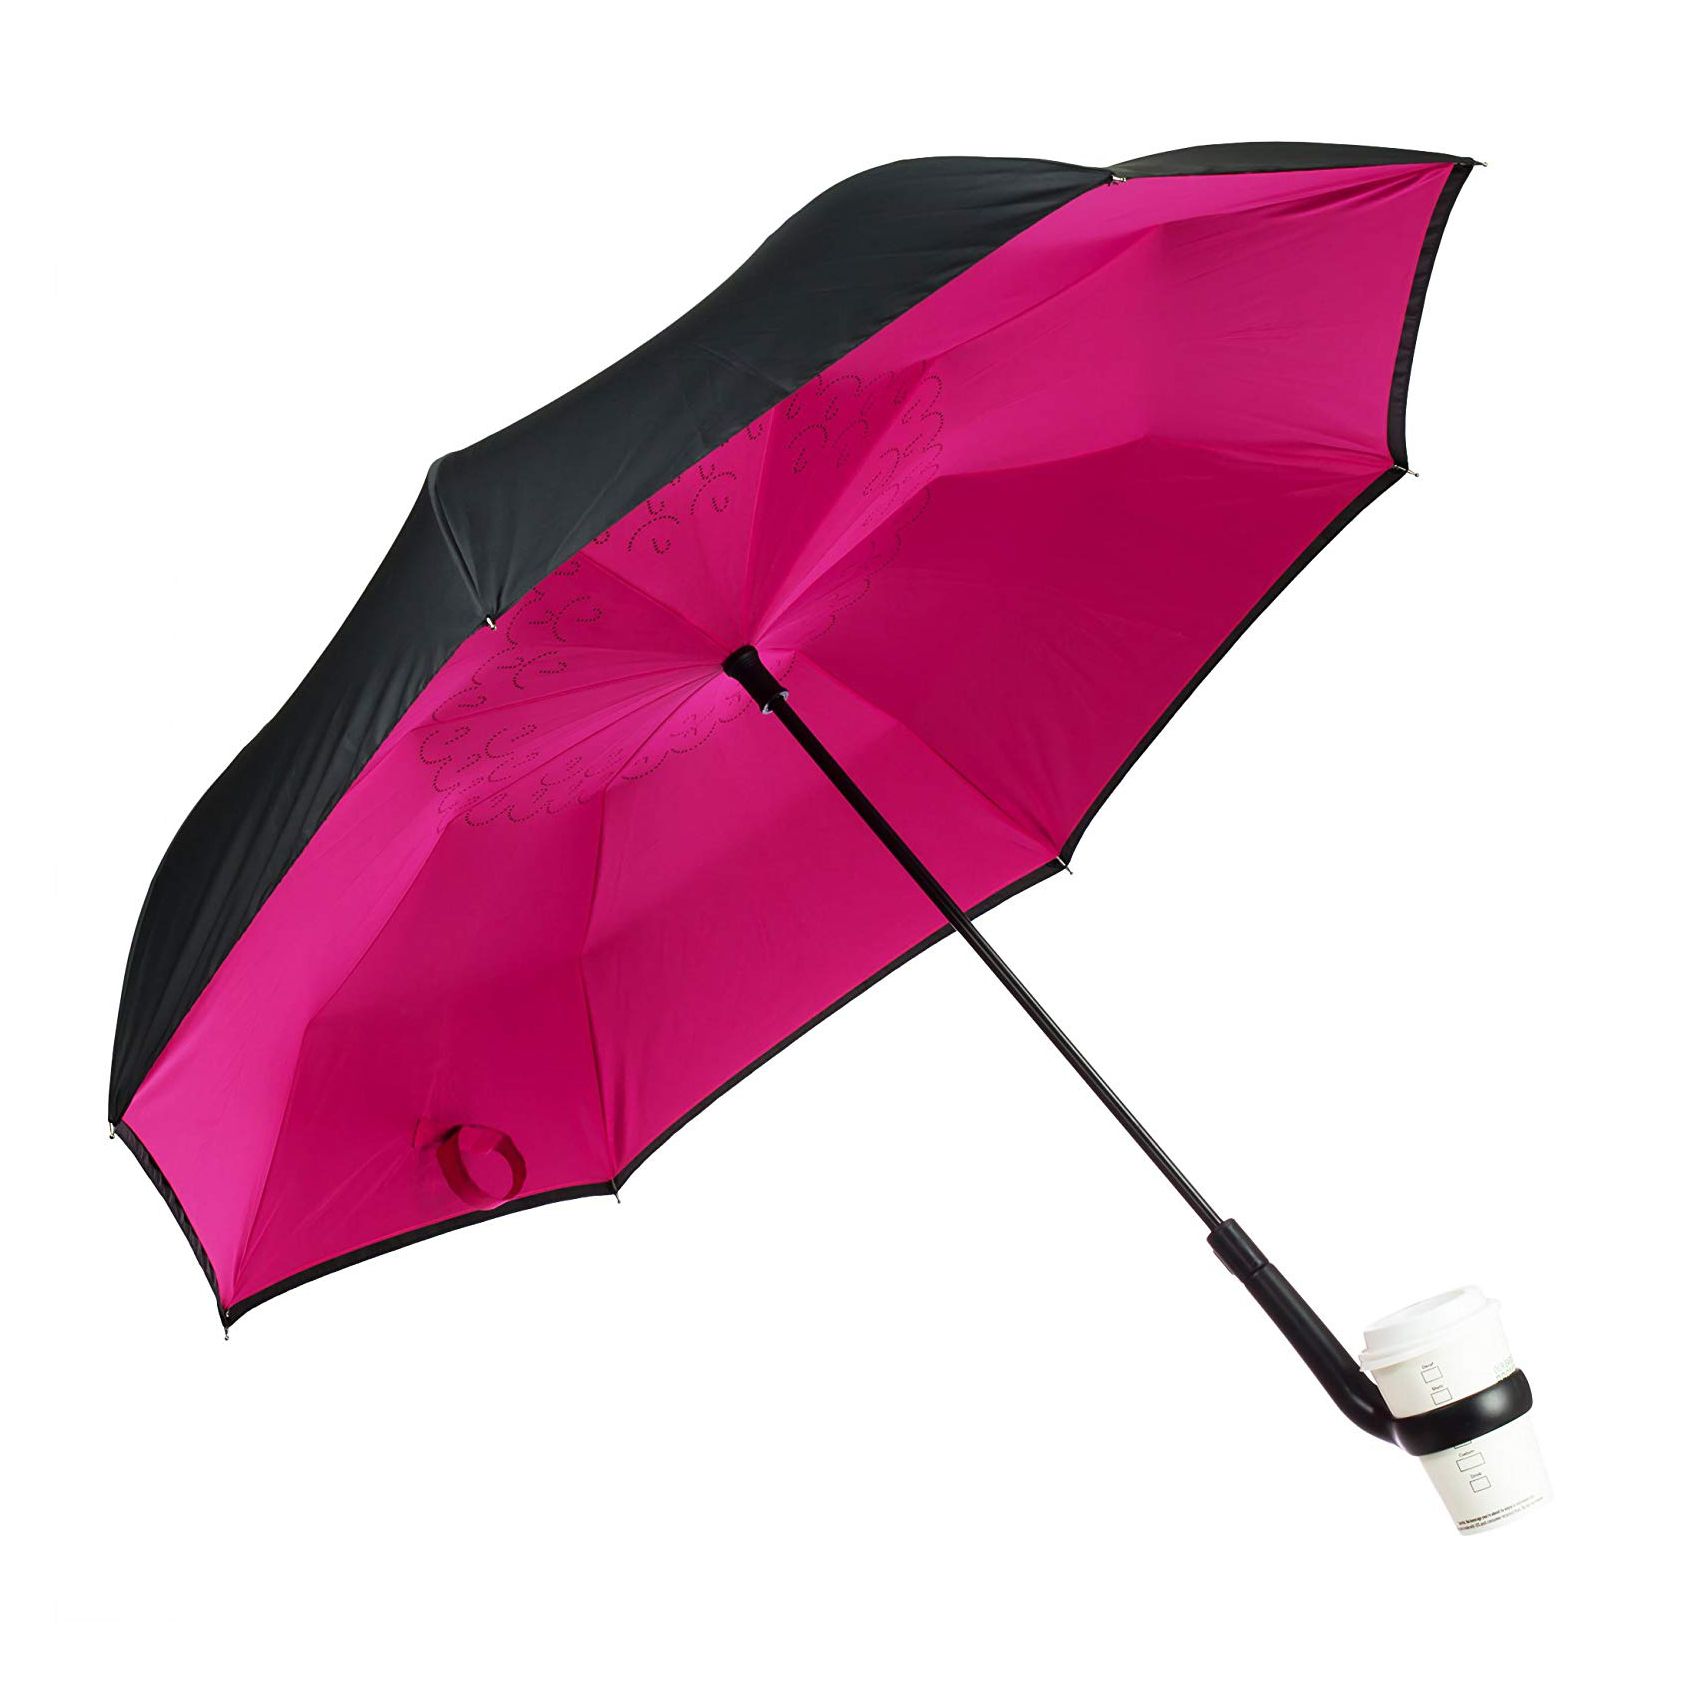 ეს შექცევადი ქოლგა ფლობს ჩემს ყავის ფინჯანს და წვიმიან დილას ცოტათი ამარტივებს